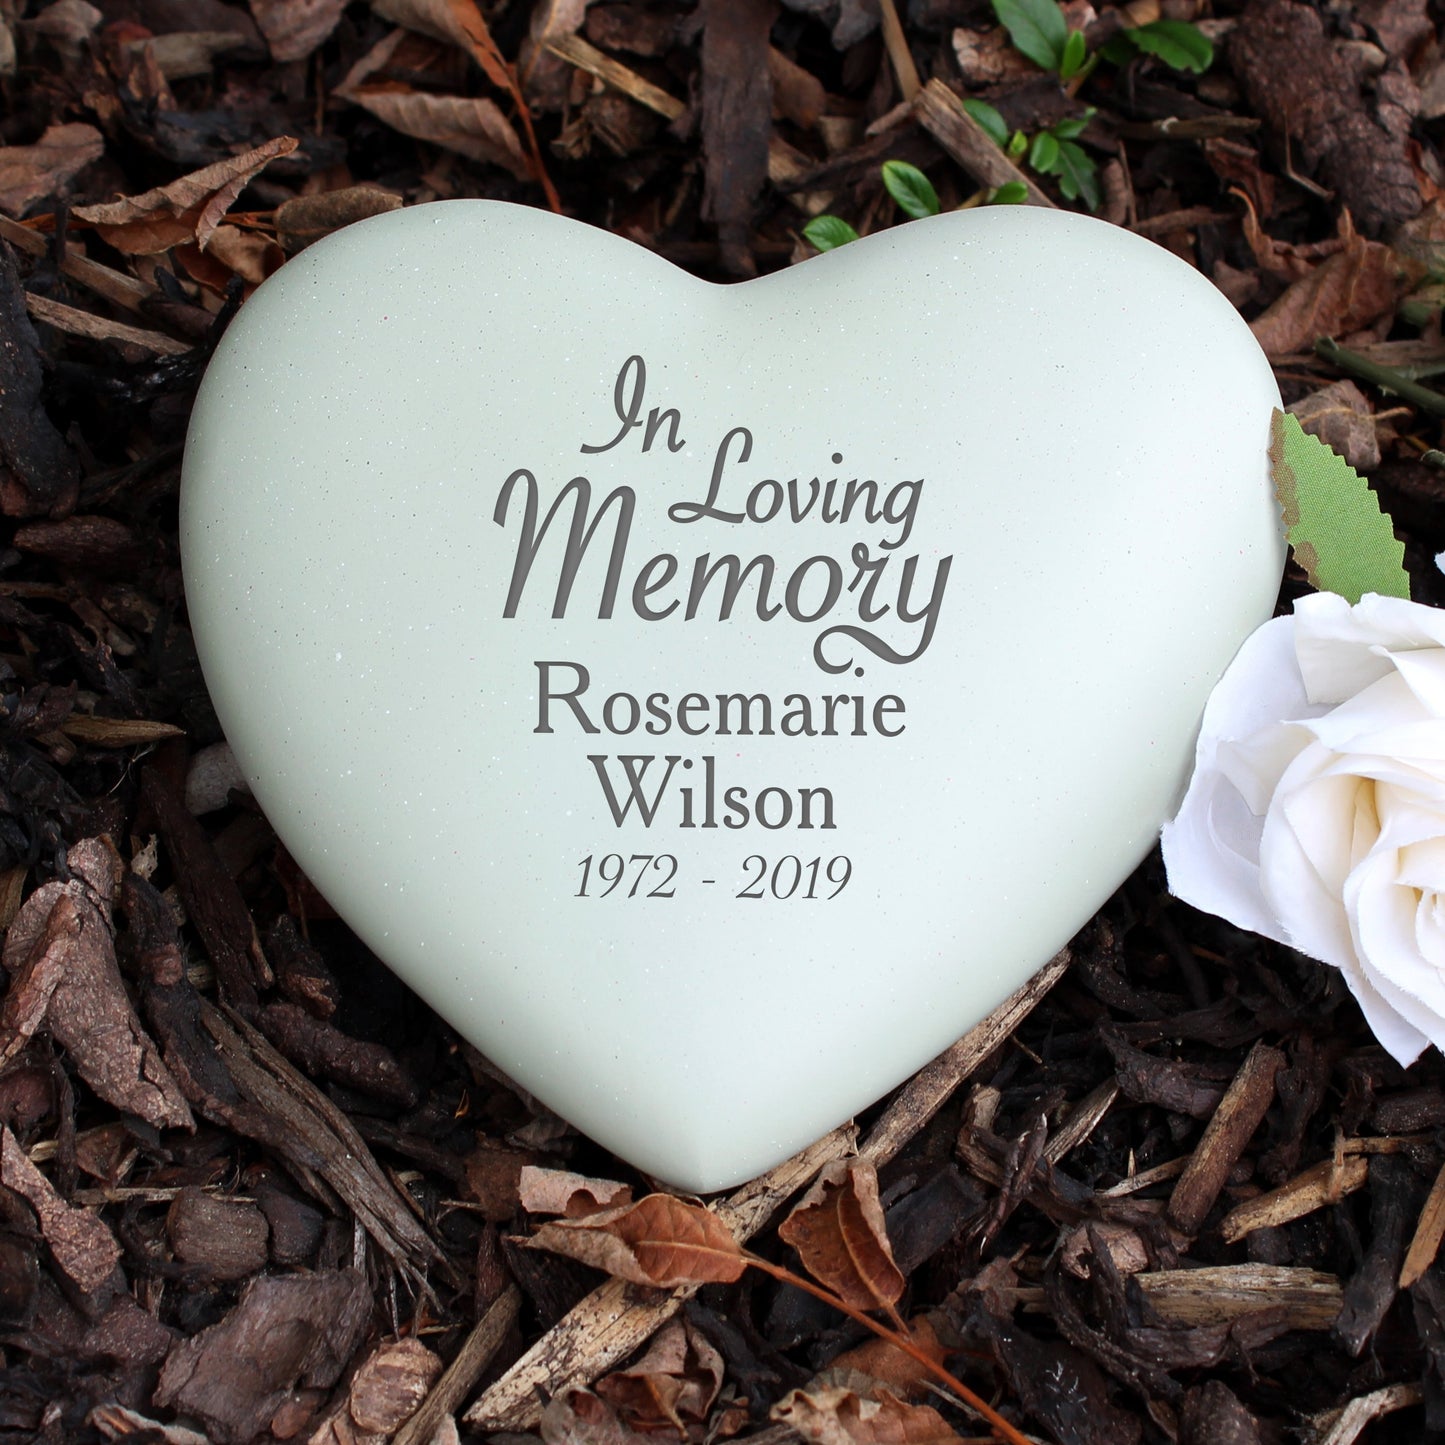 Personalised In Loving Memory Heart Memorial